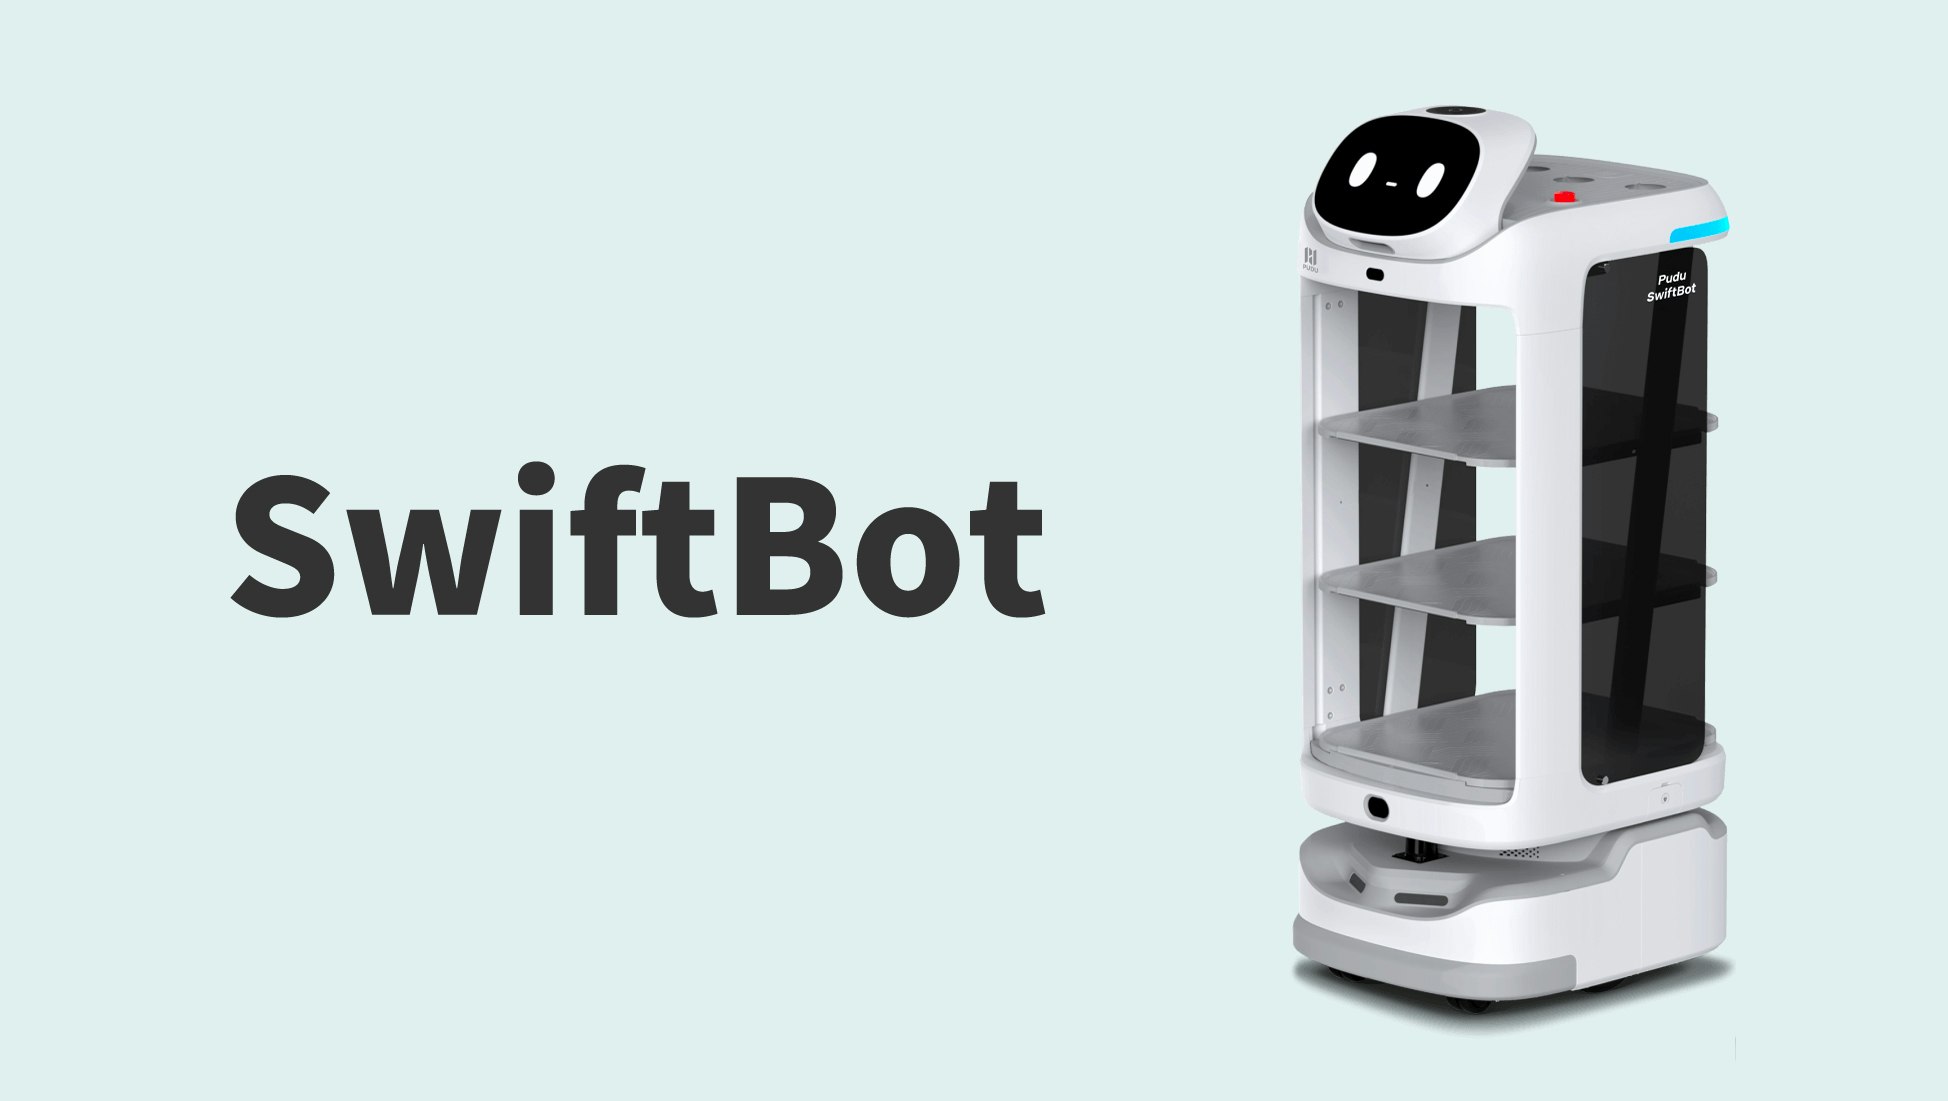 より衛生的で快適なおもてなし空間を演出
配膳・案内ロボット「SwiftBot」のキービジュアル